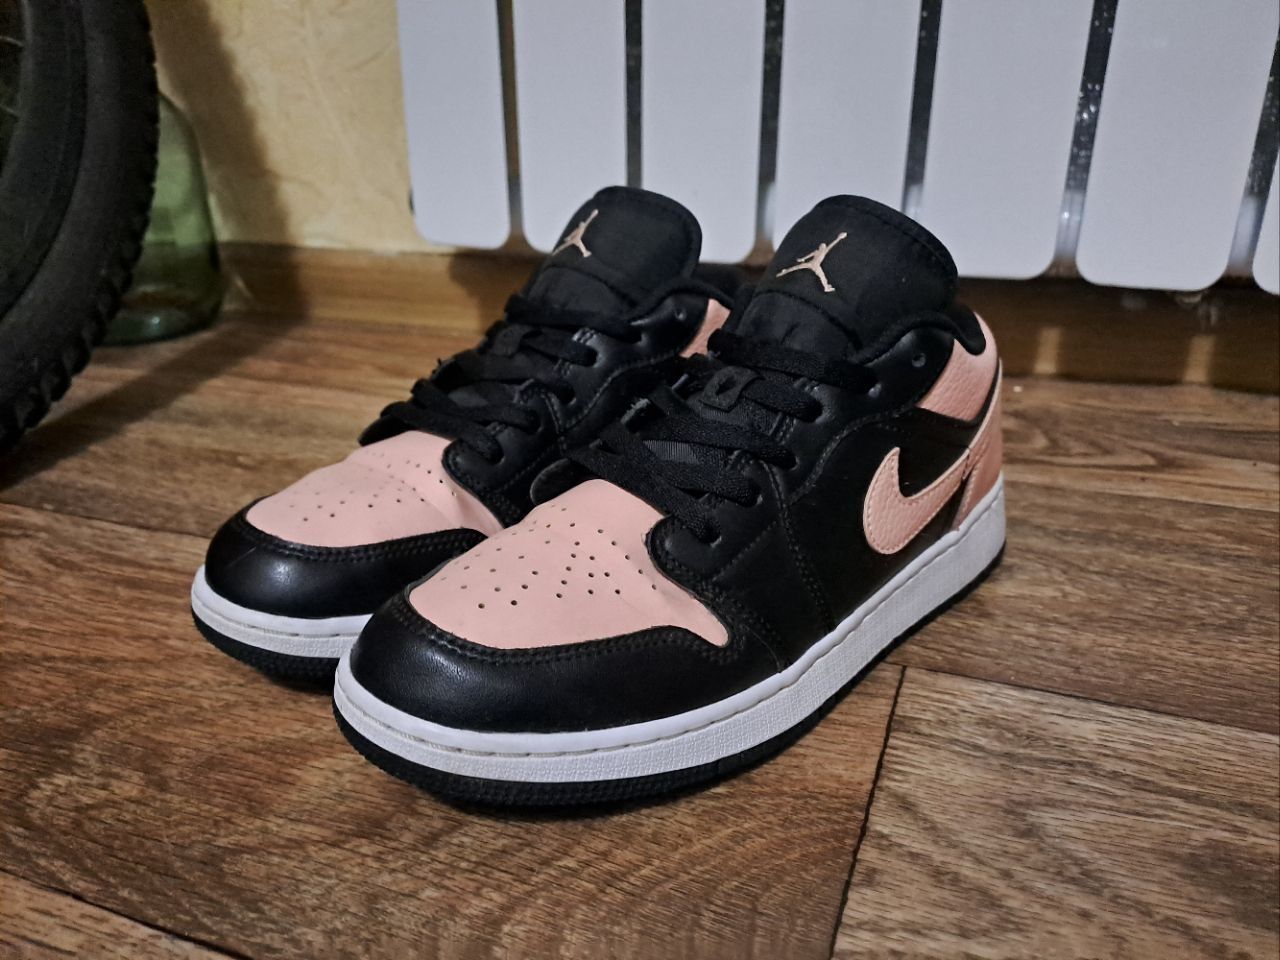 Nike AIR jordan 1 low black/pink